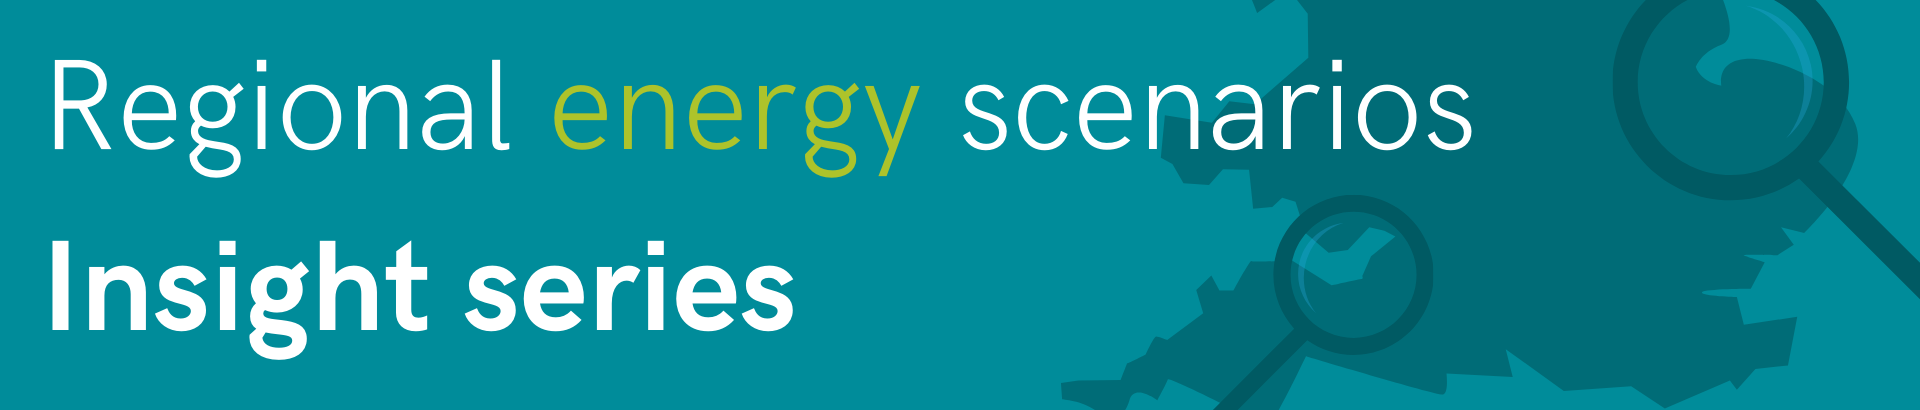 Regional Energy Scenarios Insight Series